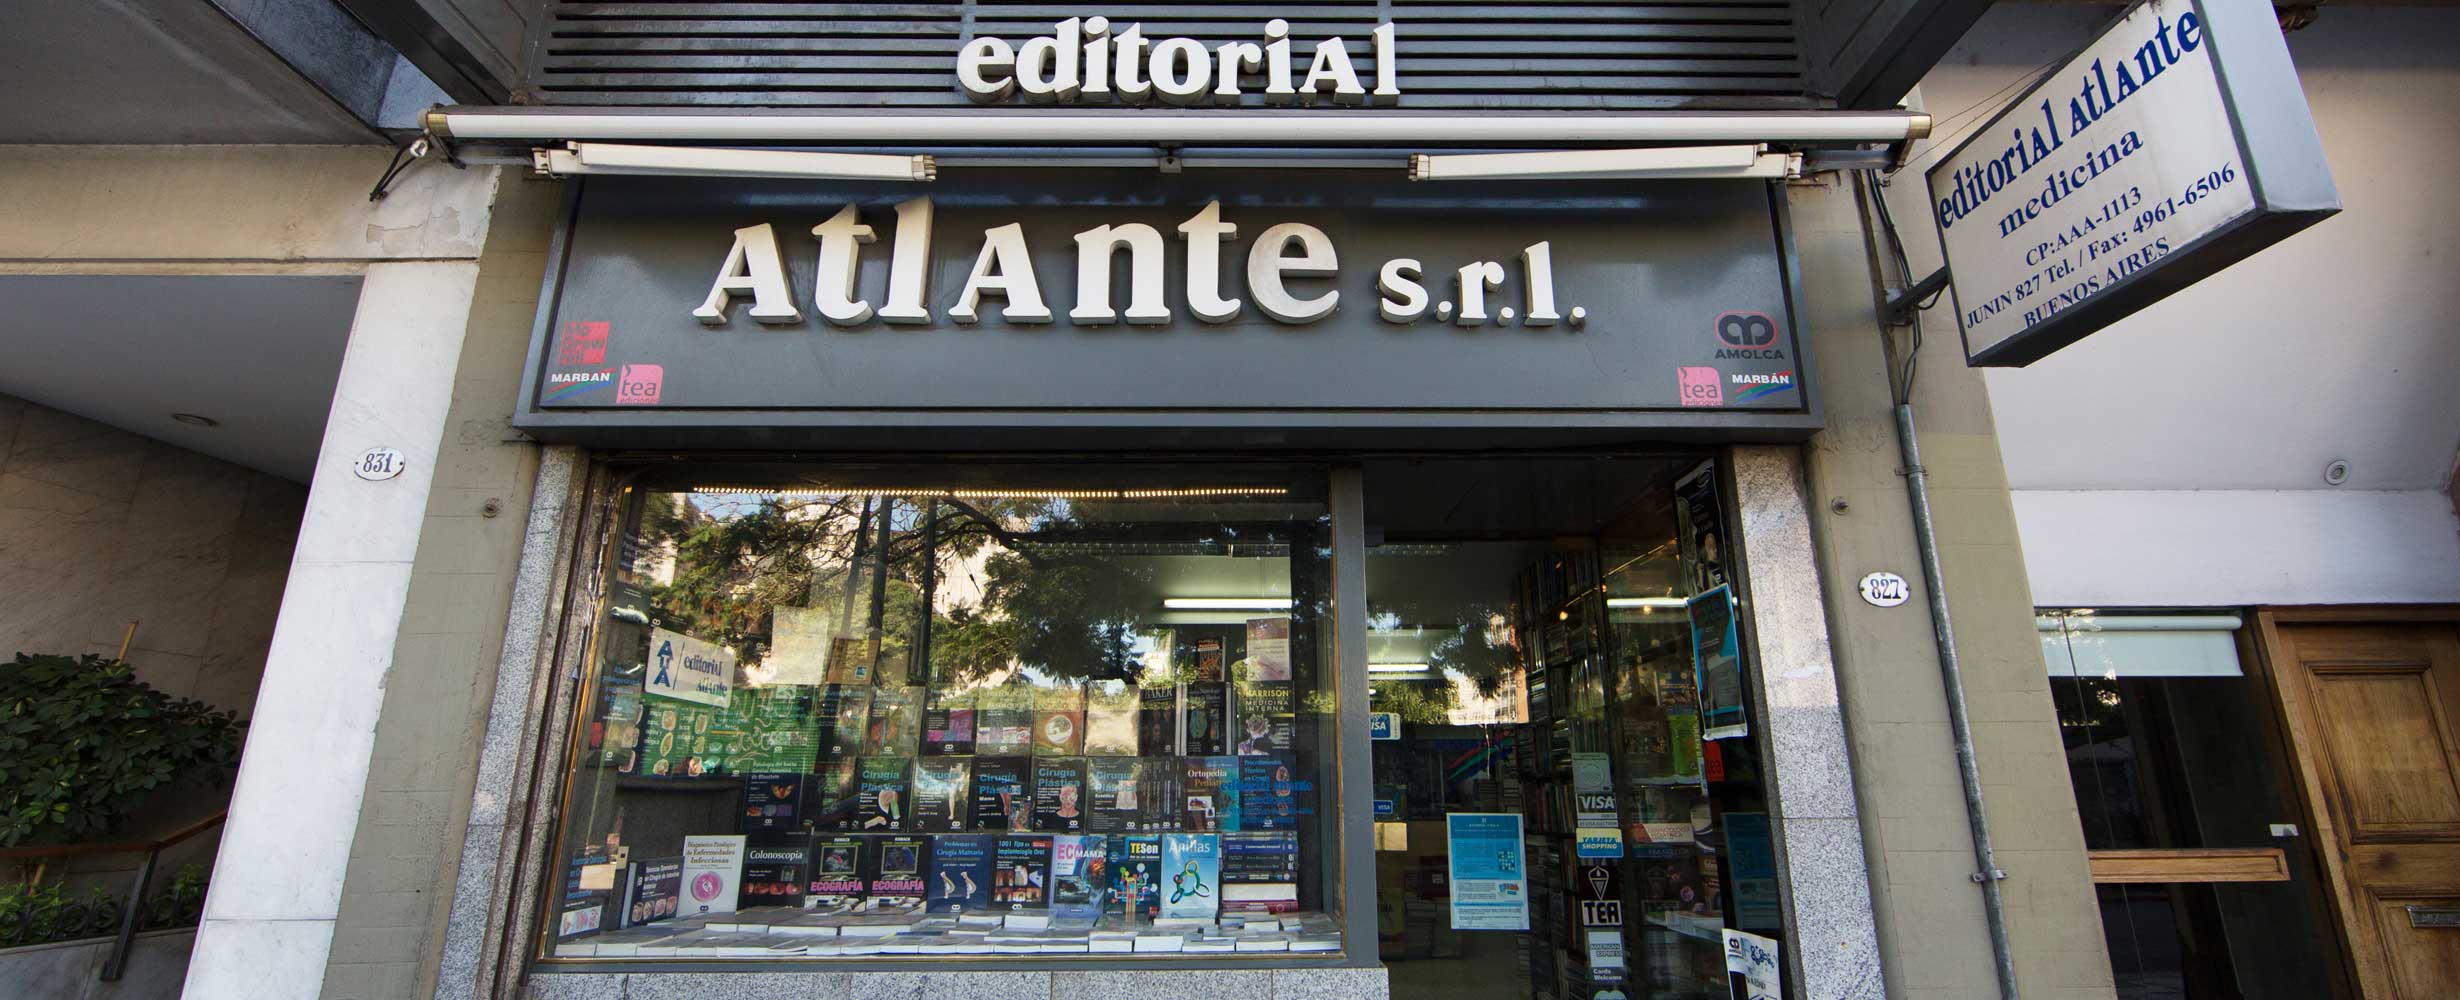 Editorial Atlante - Editorial especializada en ciencias de la salud - Casa Central